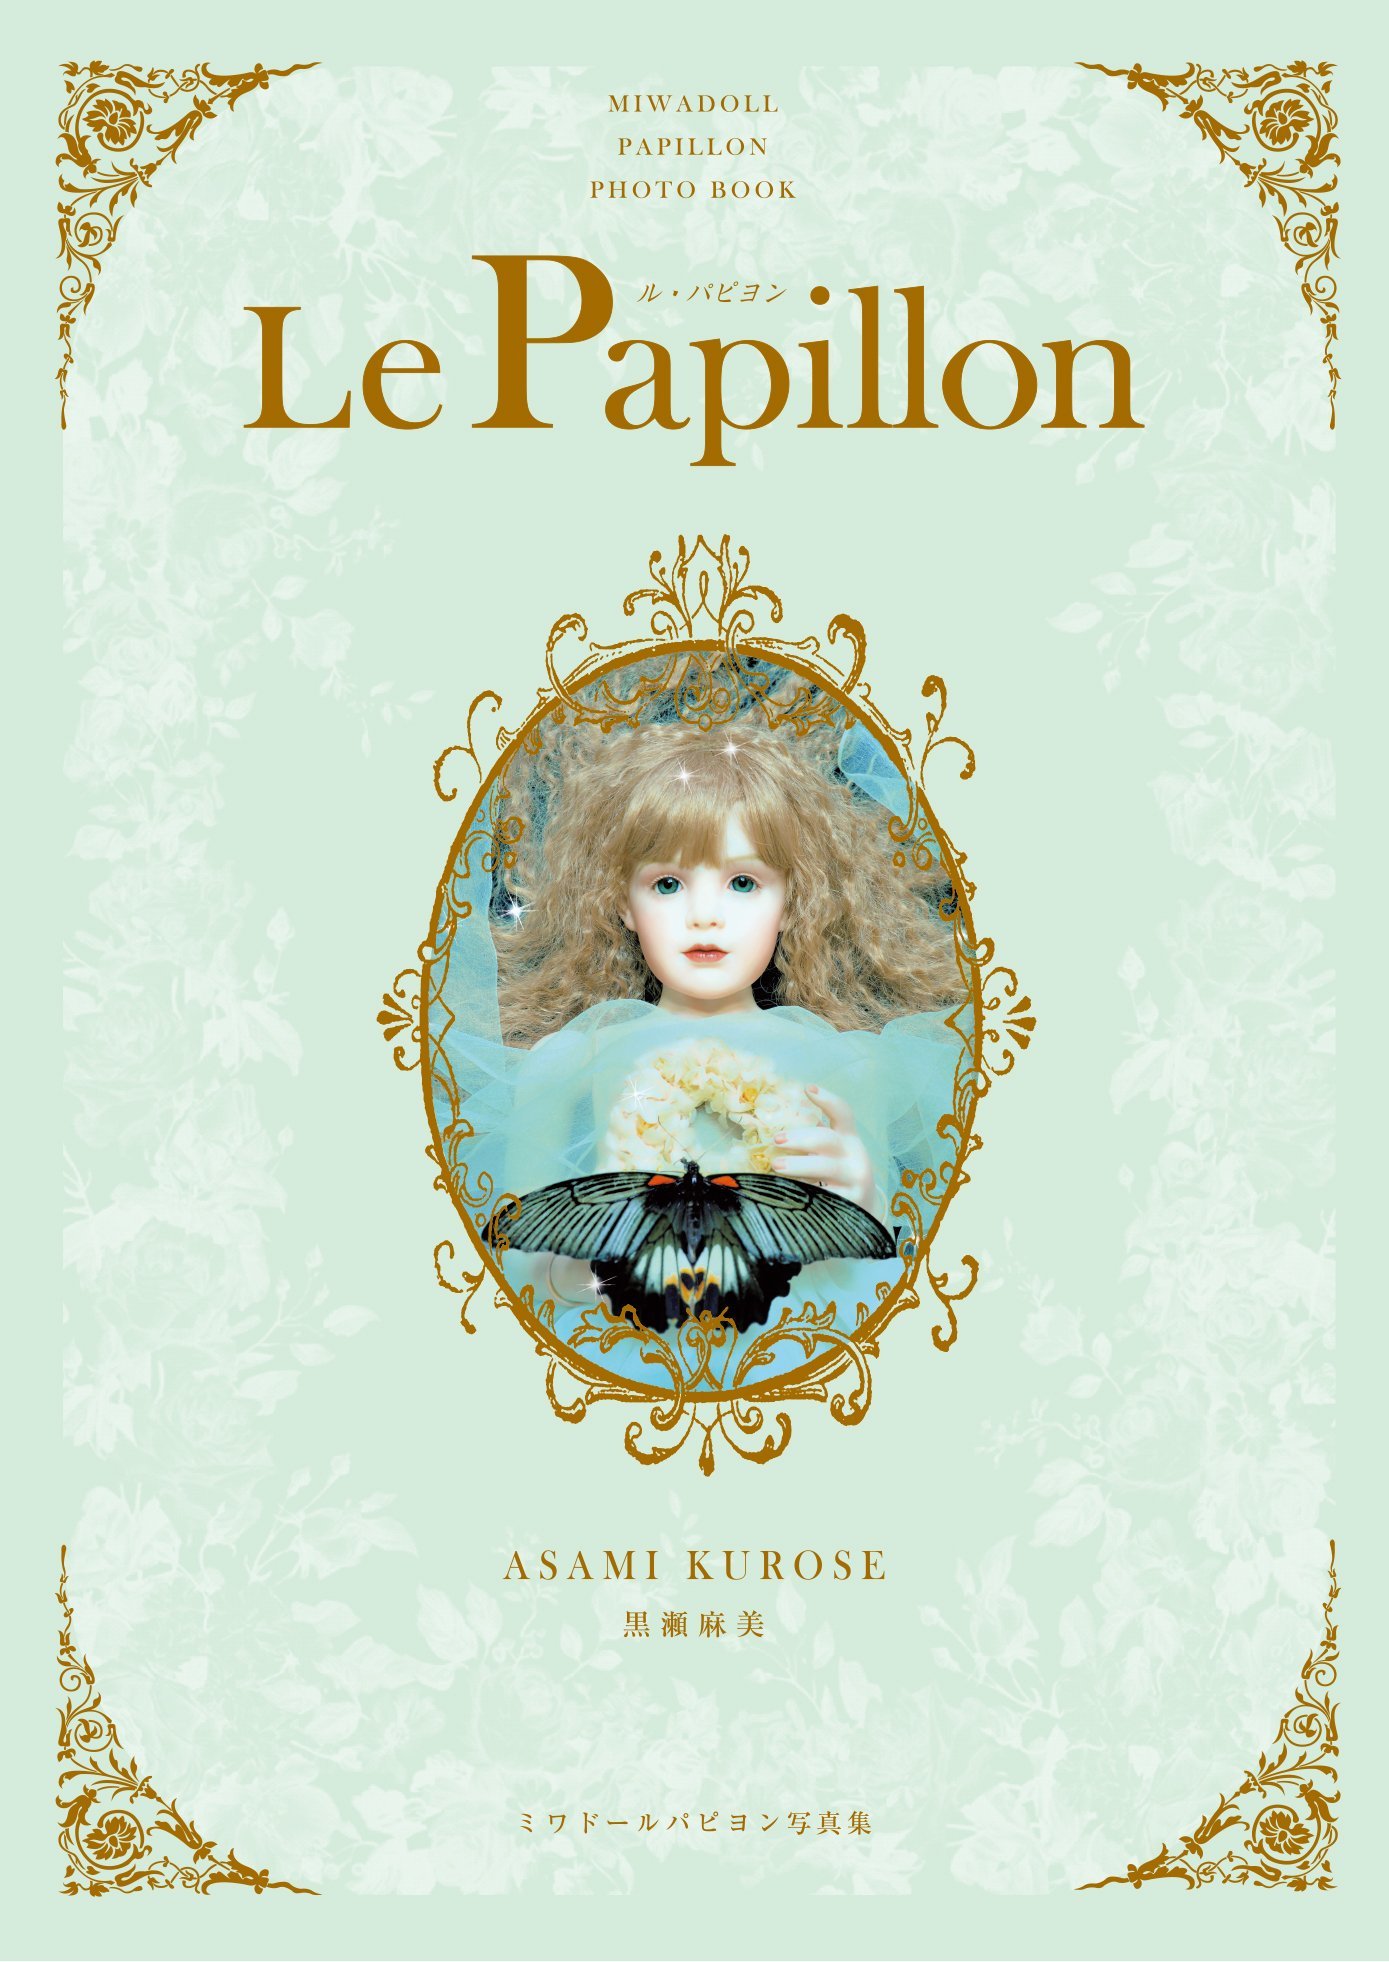 ミワドール Le Papillon パピヨン写真集 発売_d0155782_17472205.jpg